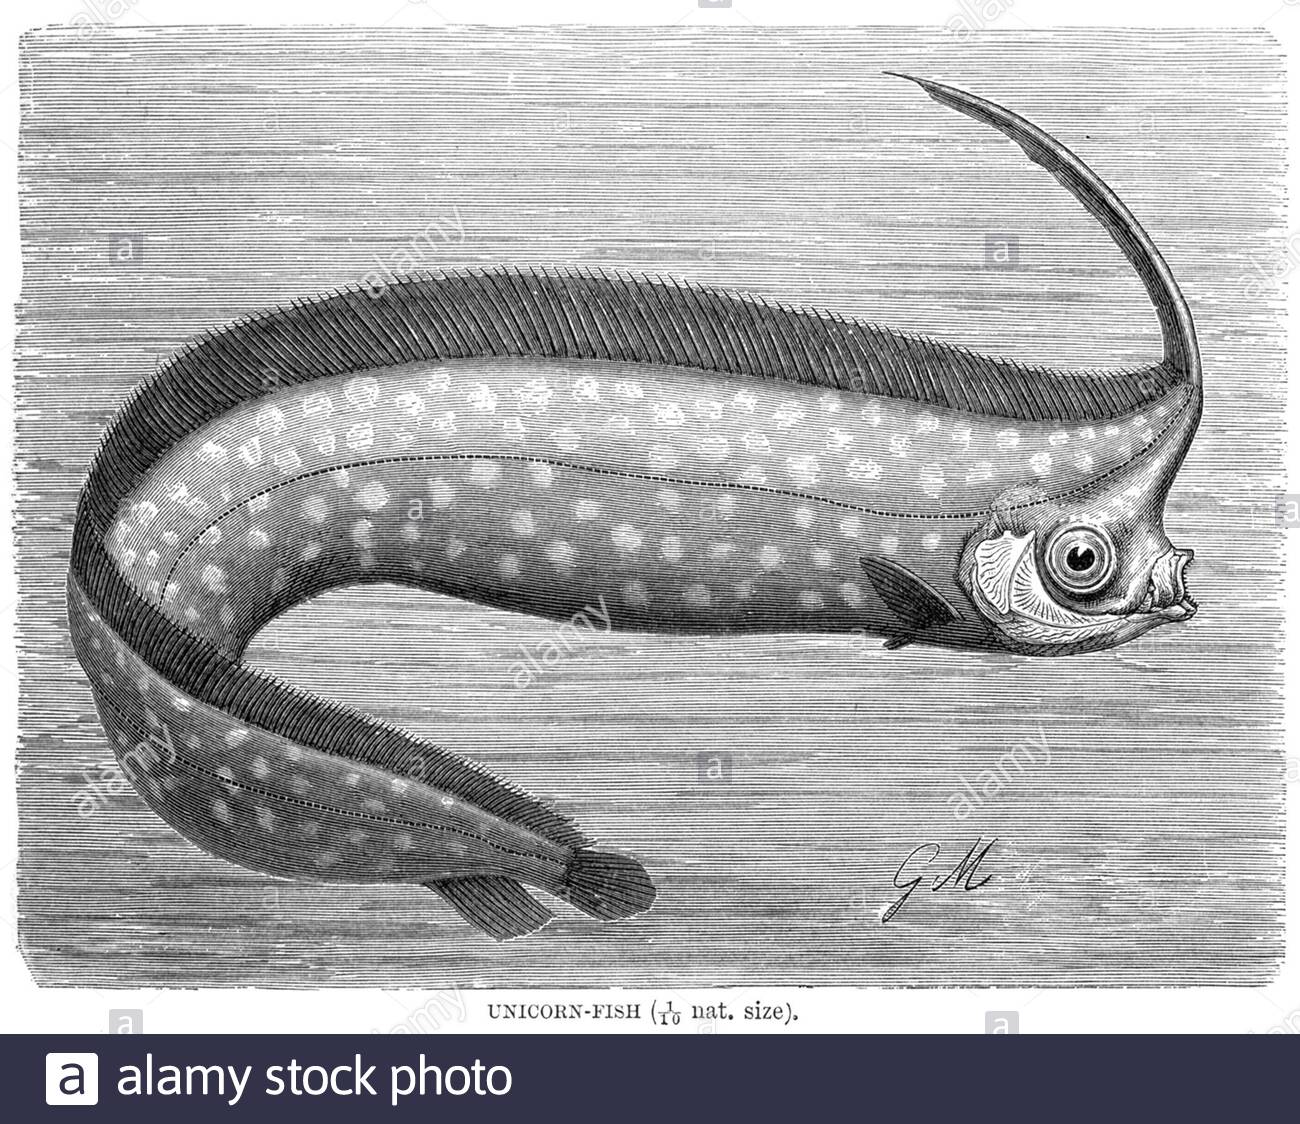 Unicorn Fish, illustrazione d'annata del 1896 Foto Stock